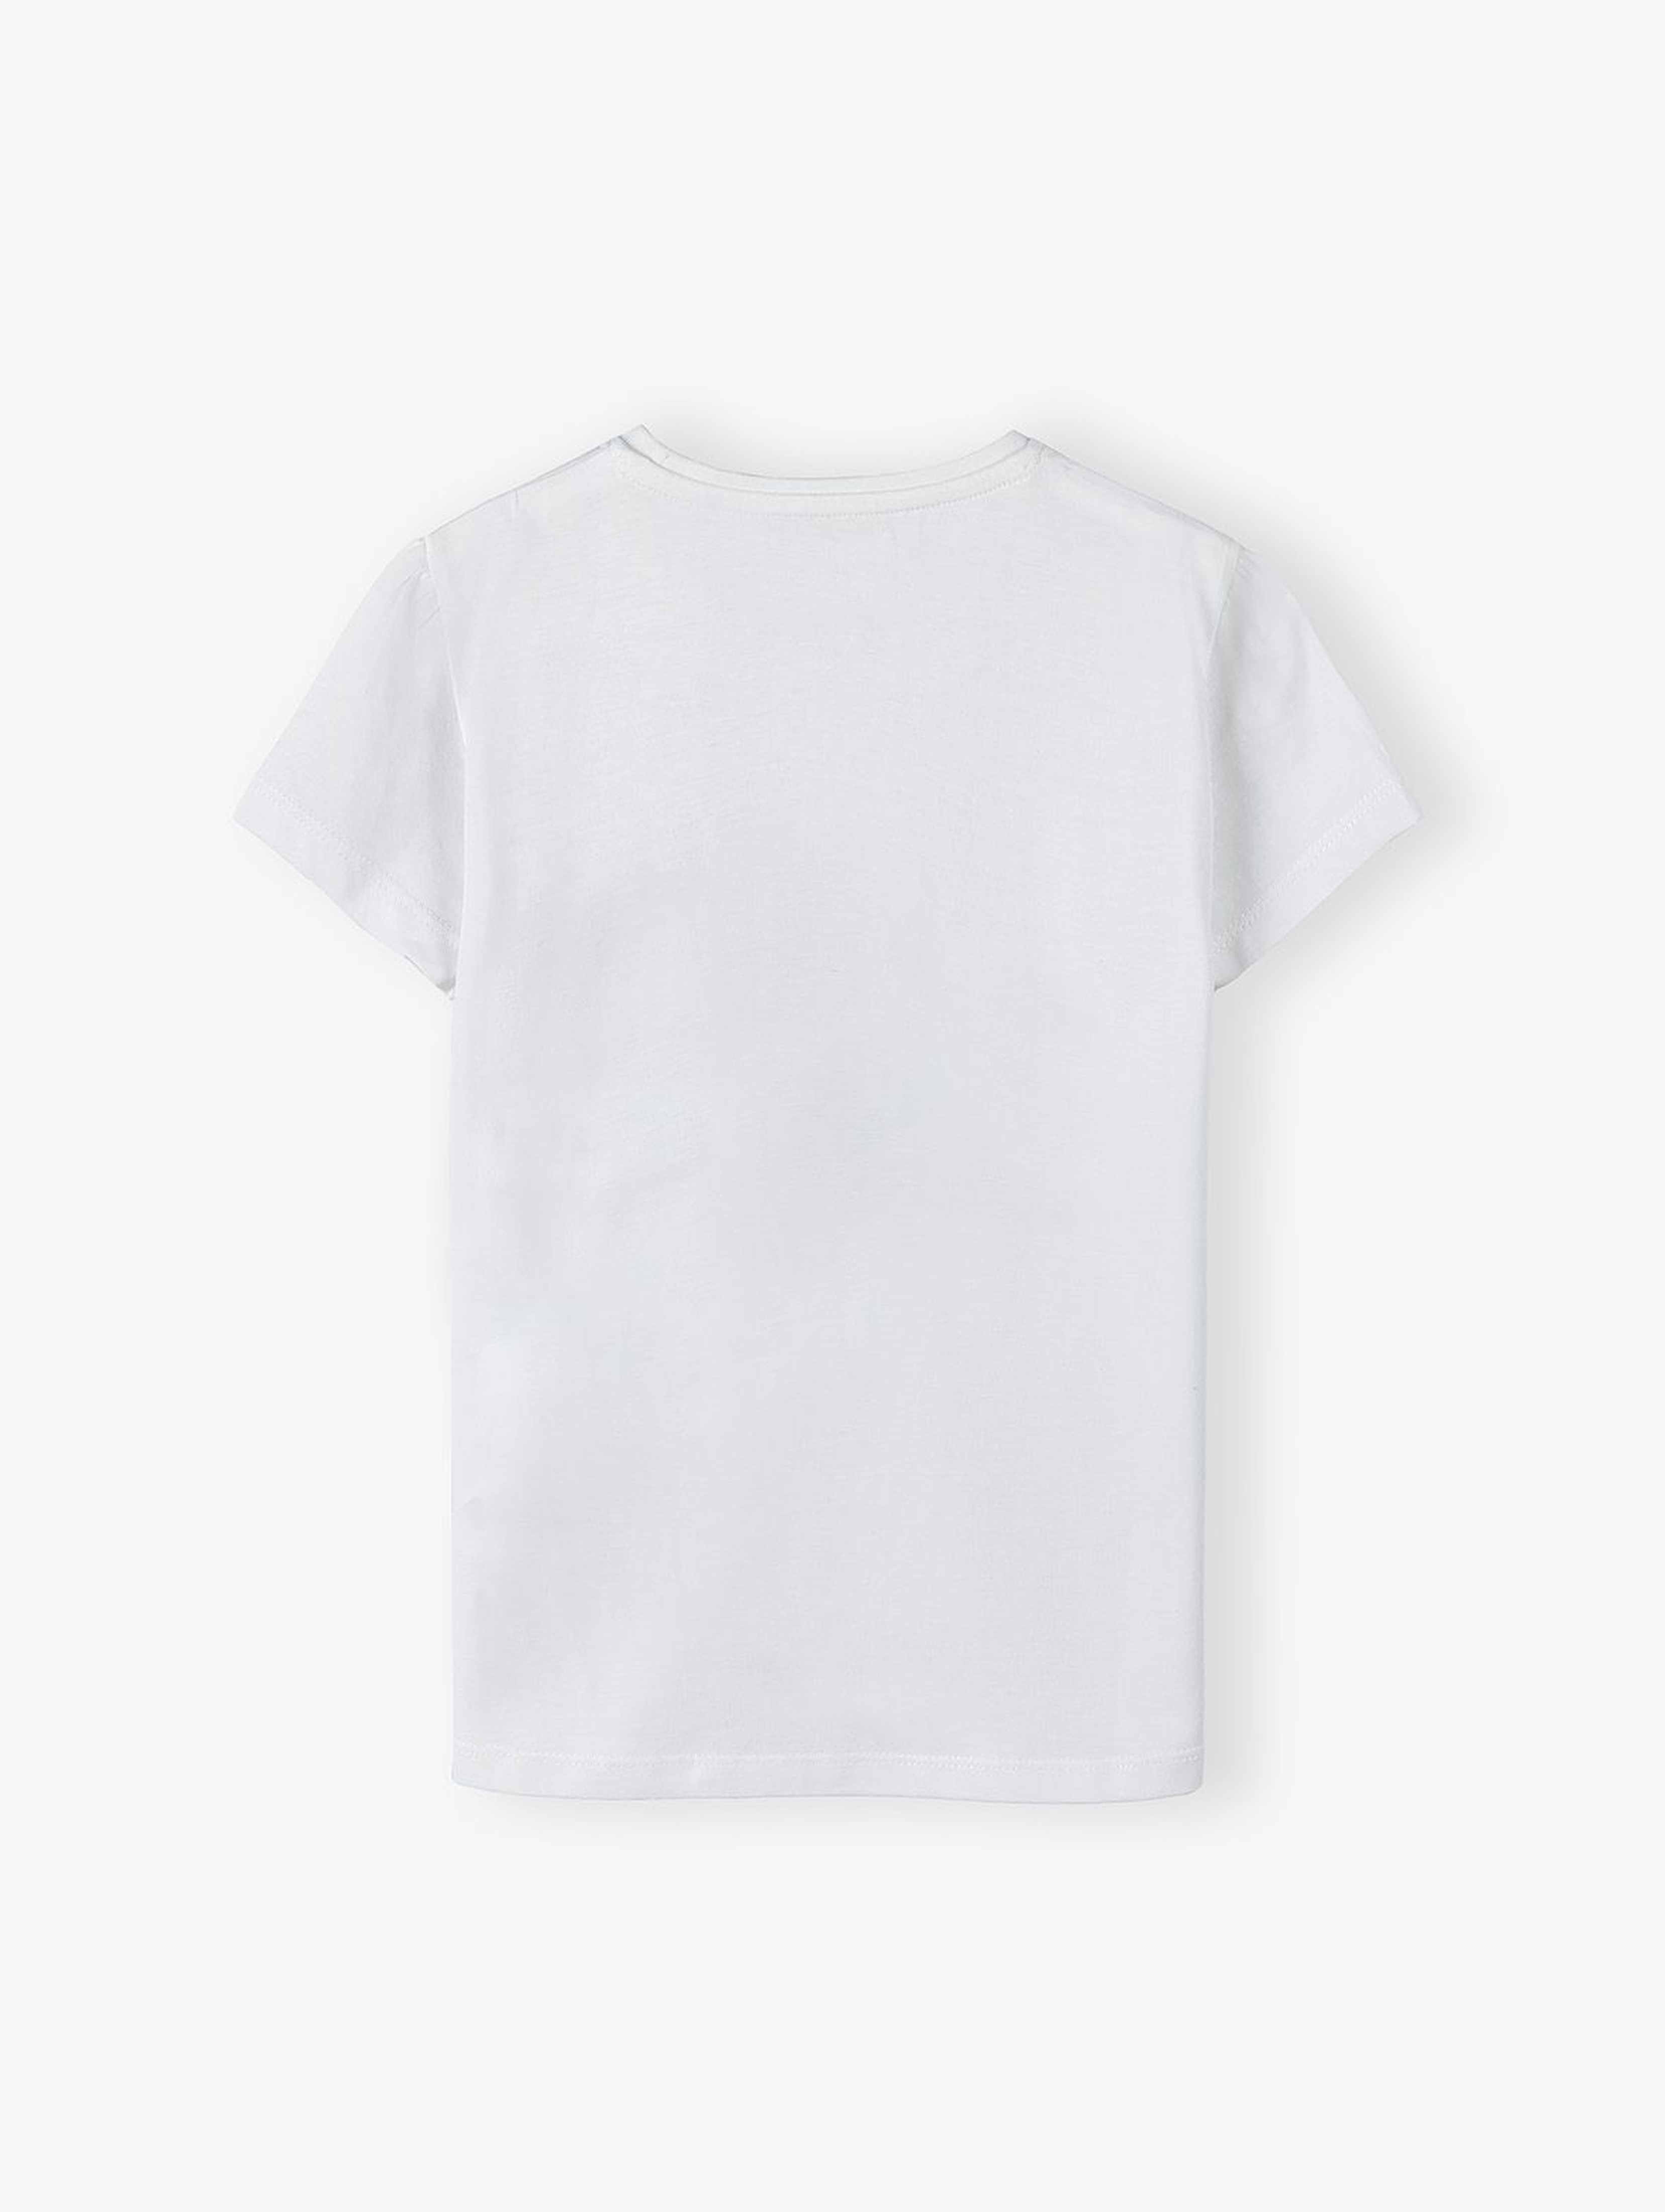 Bawełniany biały t-shirt dziewczęcy z pieskami